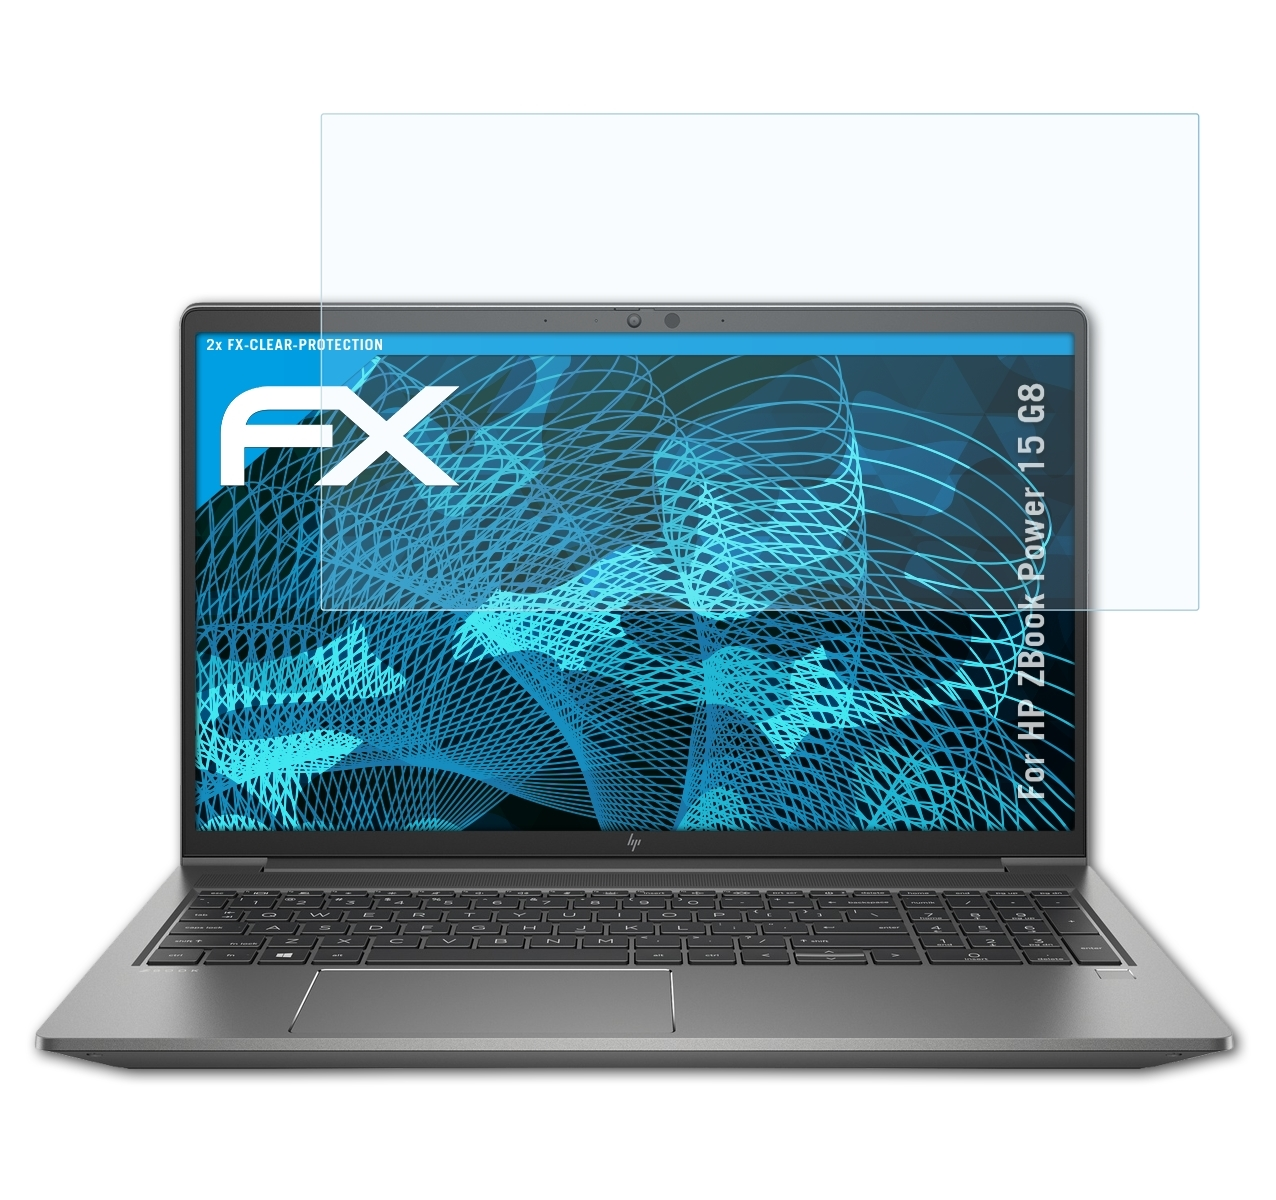 ATFOLIX 2x FX-Clear Displayschutz(für HP G8) 15 ZBook Power